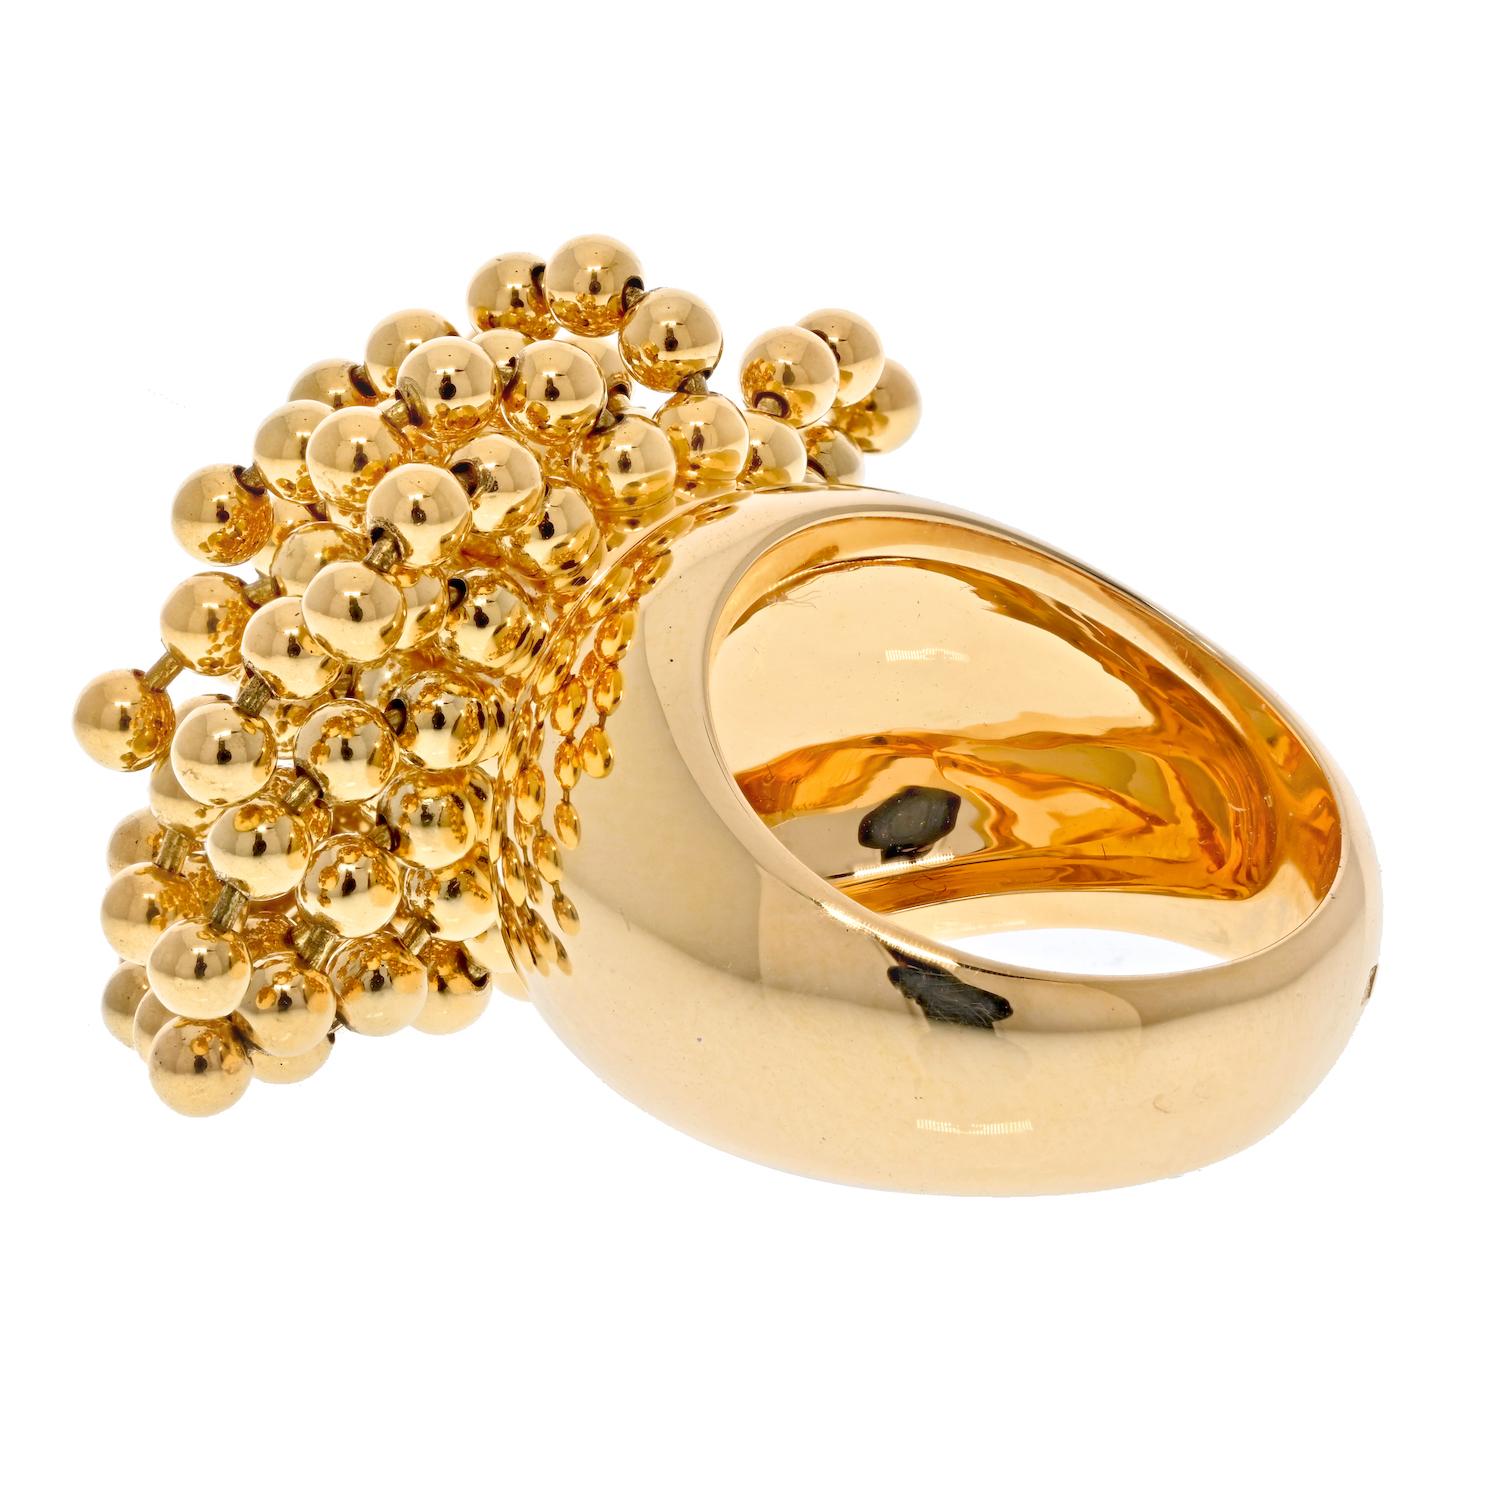  Cartier, bague Nouvelle Vague articulée en or jaune 18 carats et perles, Paris Pour femmes 